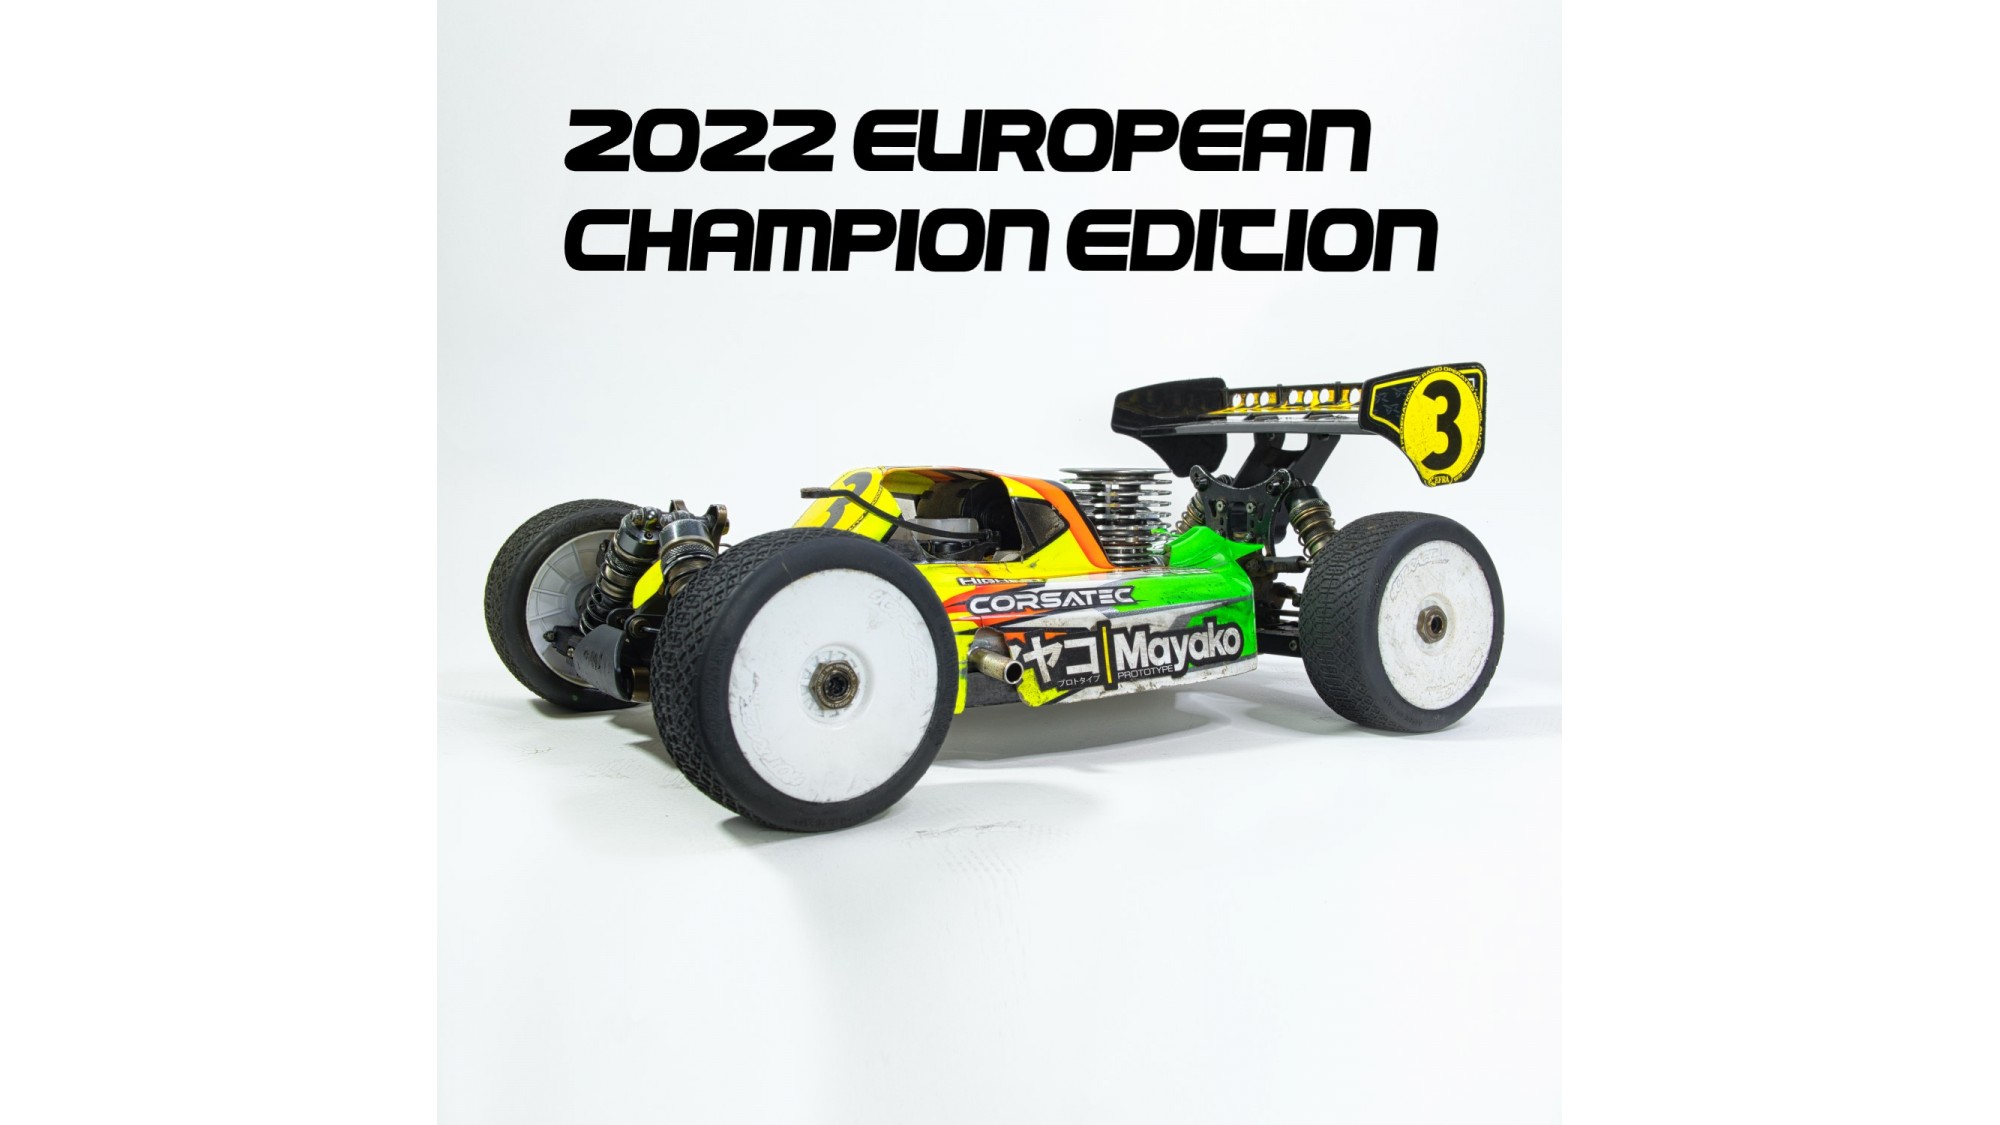 マヤコ Mayako MX8-22 1:8th Nitro Buggy - European Champion Edition